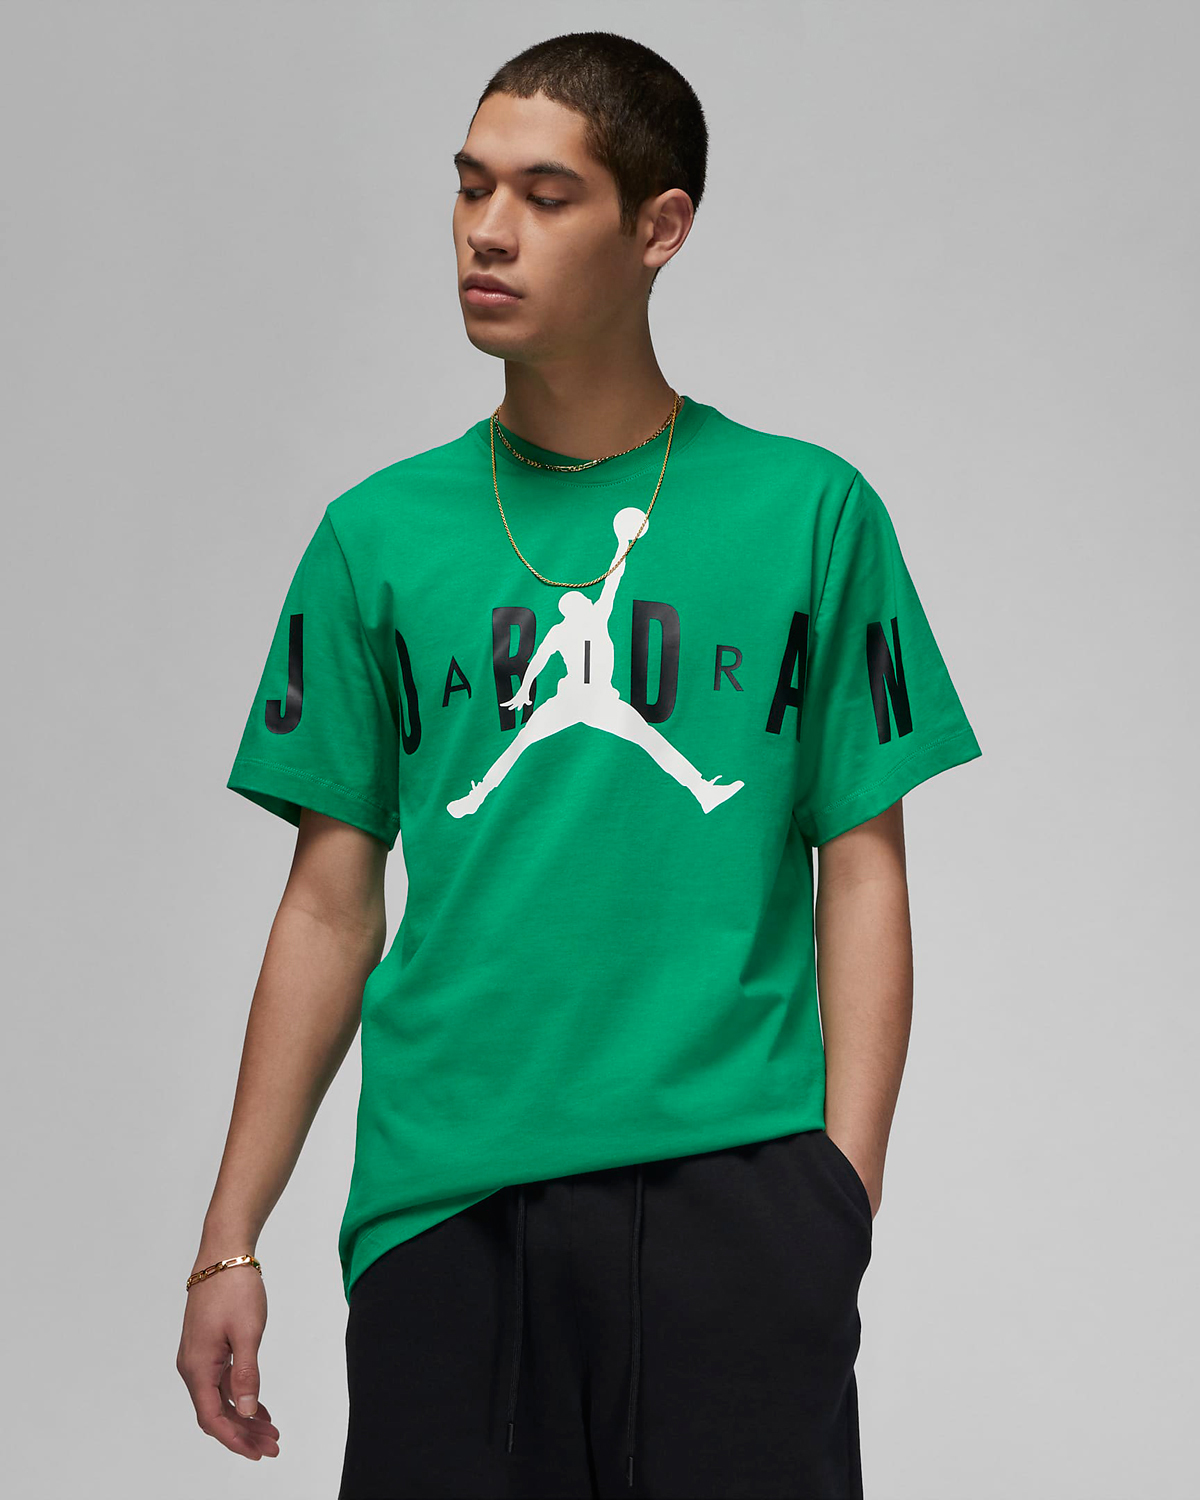 Jordan-5-Lucky-Green-Shirt